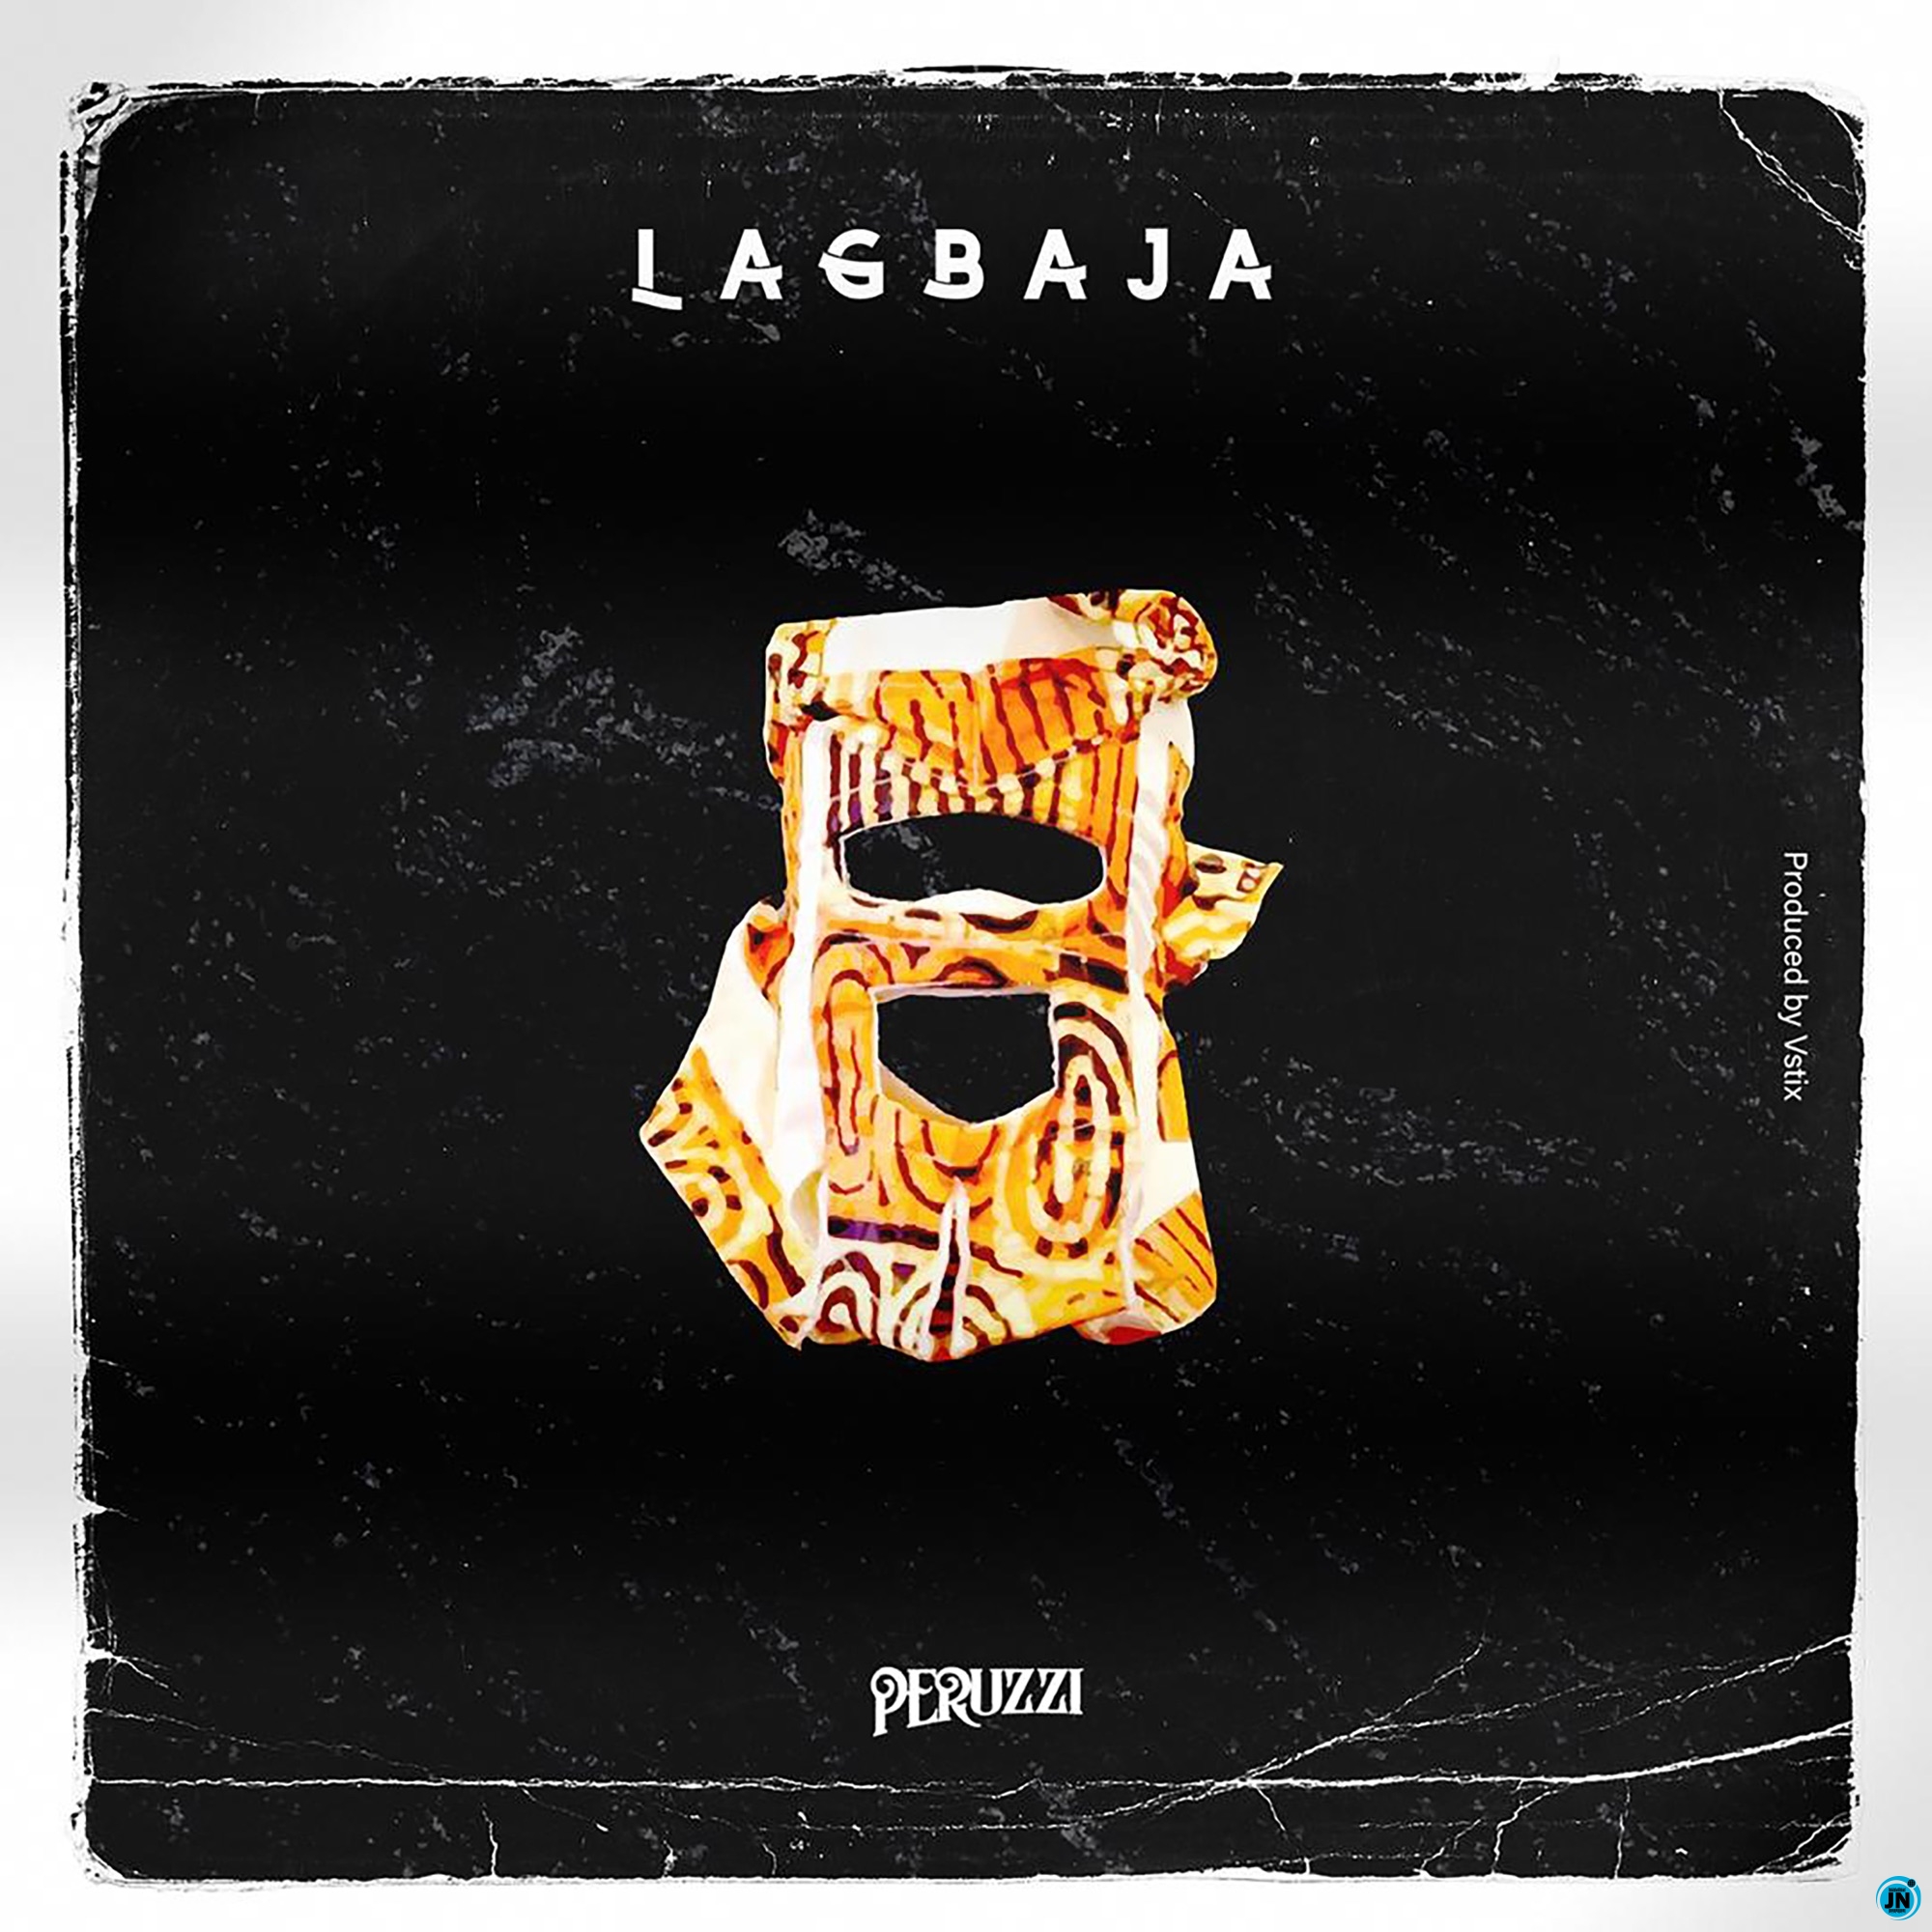 Peruzzi - Lagbaja  Mp3 Download lyrics